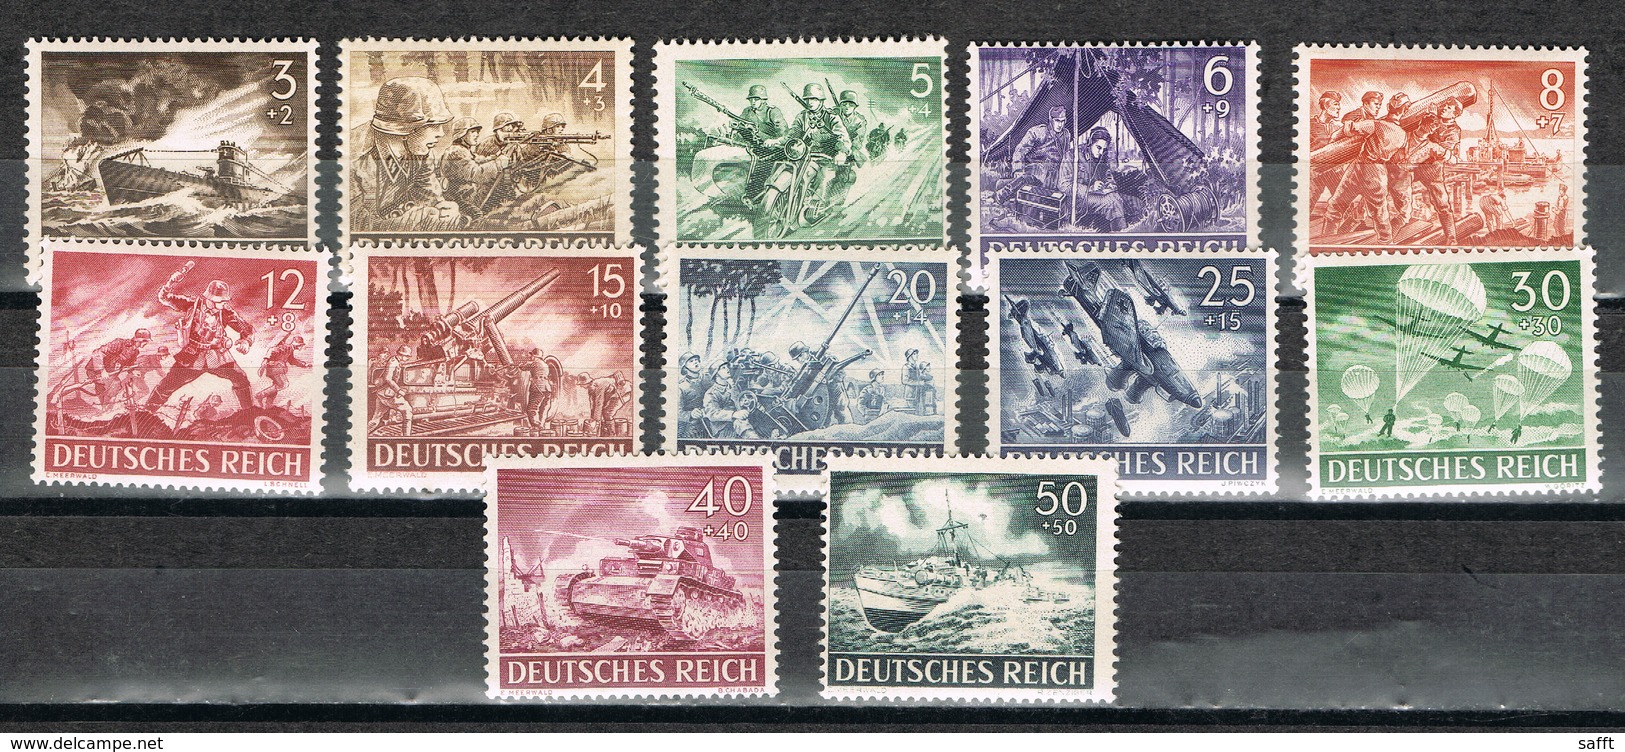 Deutsches Reich 831/842 Postfrisch - Wehrmacht 1943 - Ungebraucht